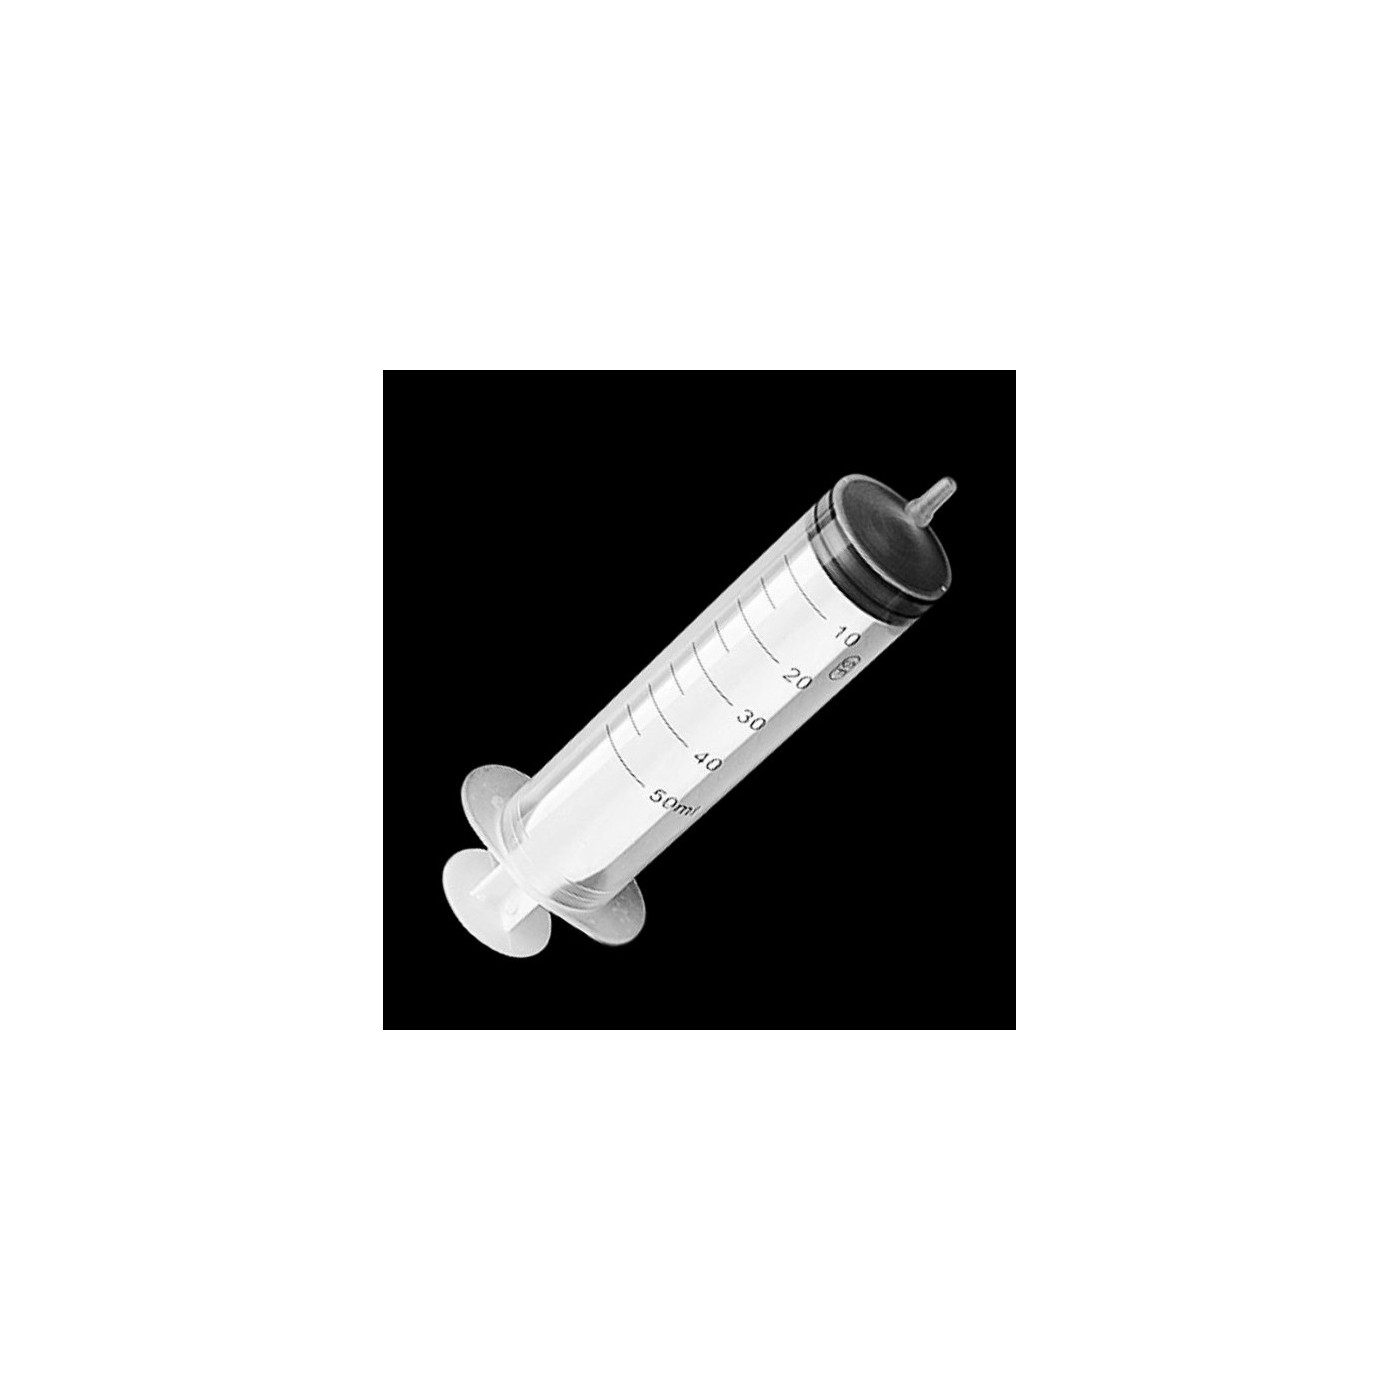 Set of 10 extra large syringes (50 ml, without needle, for